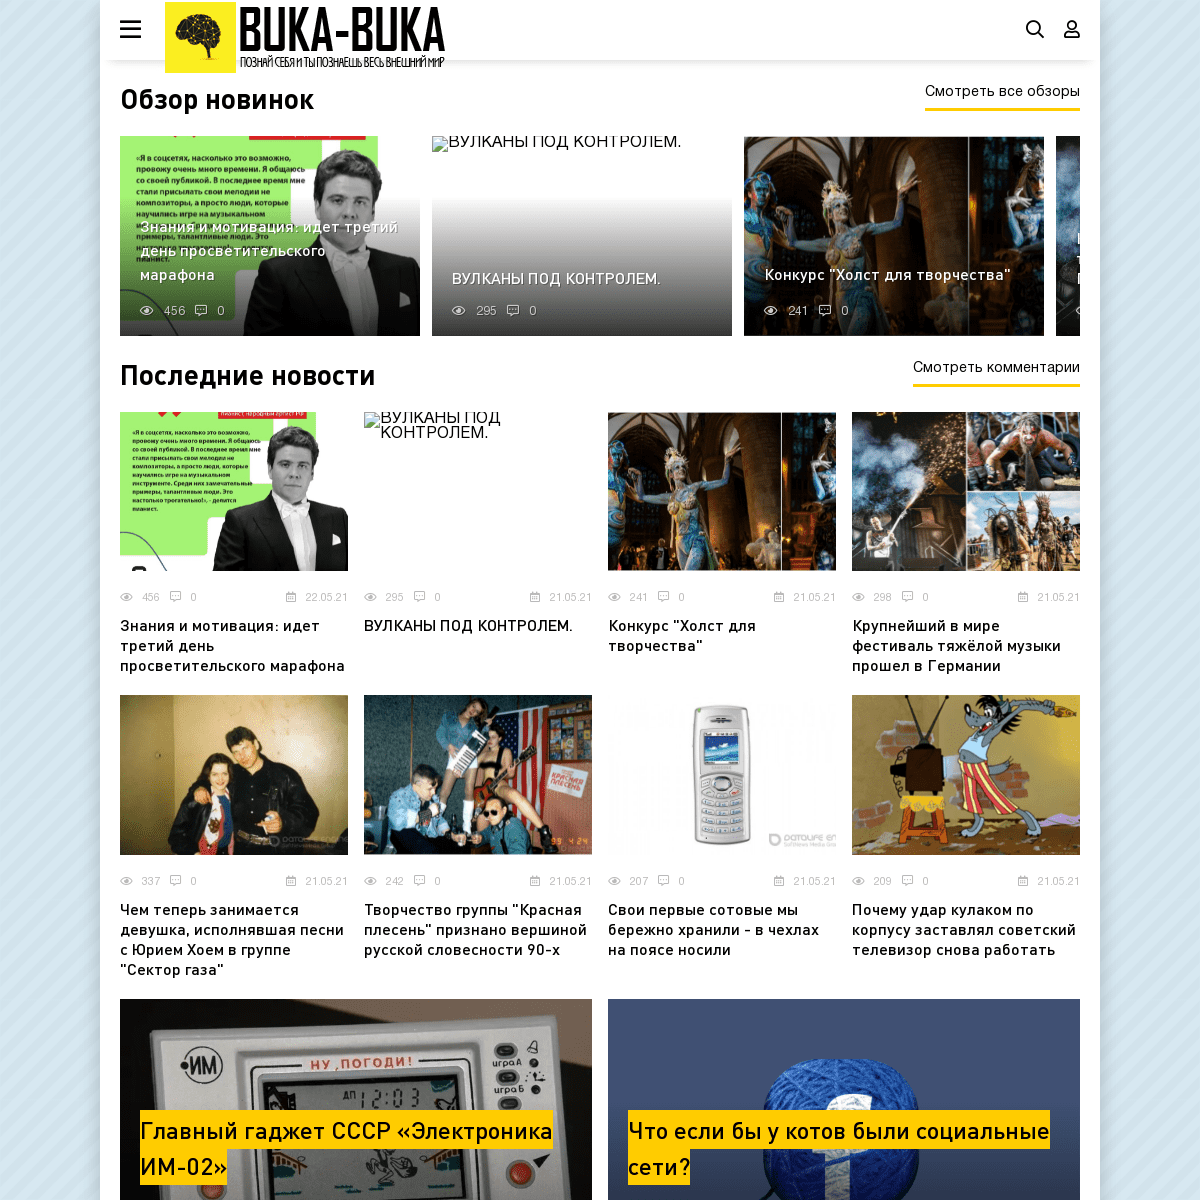 A complete backup of https://buka-buka.ru